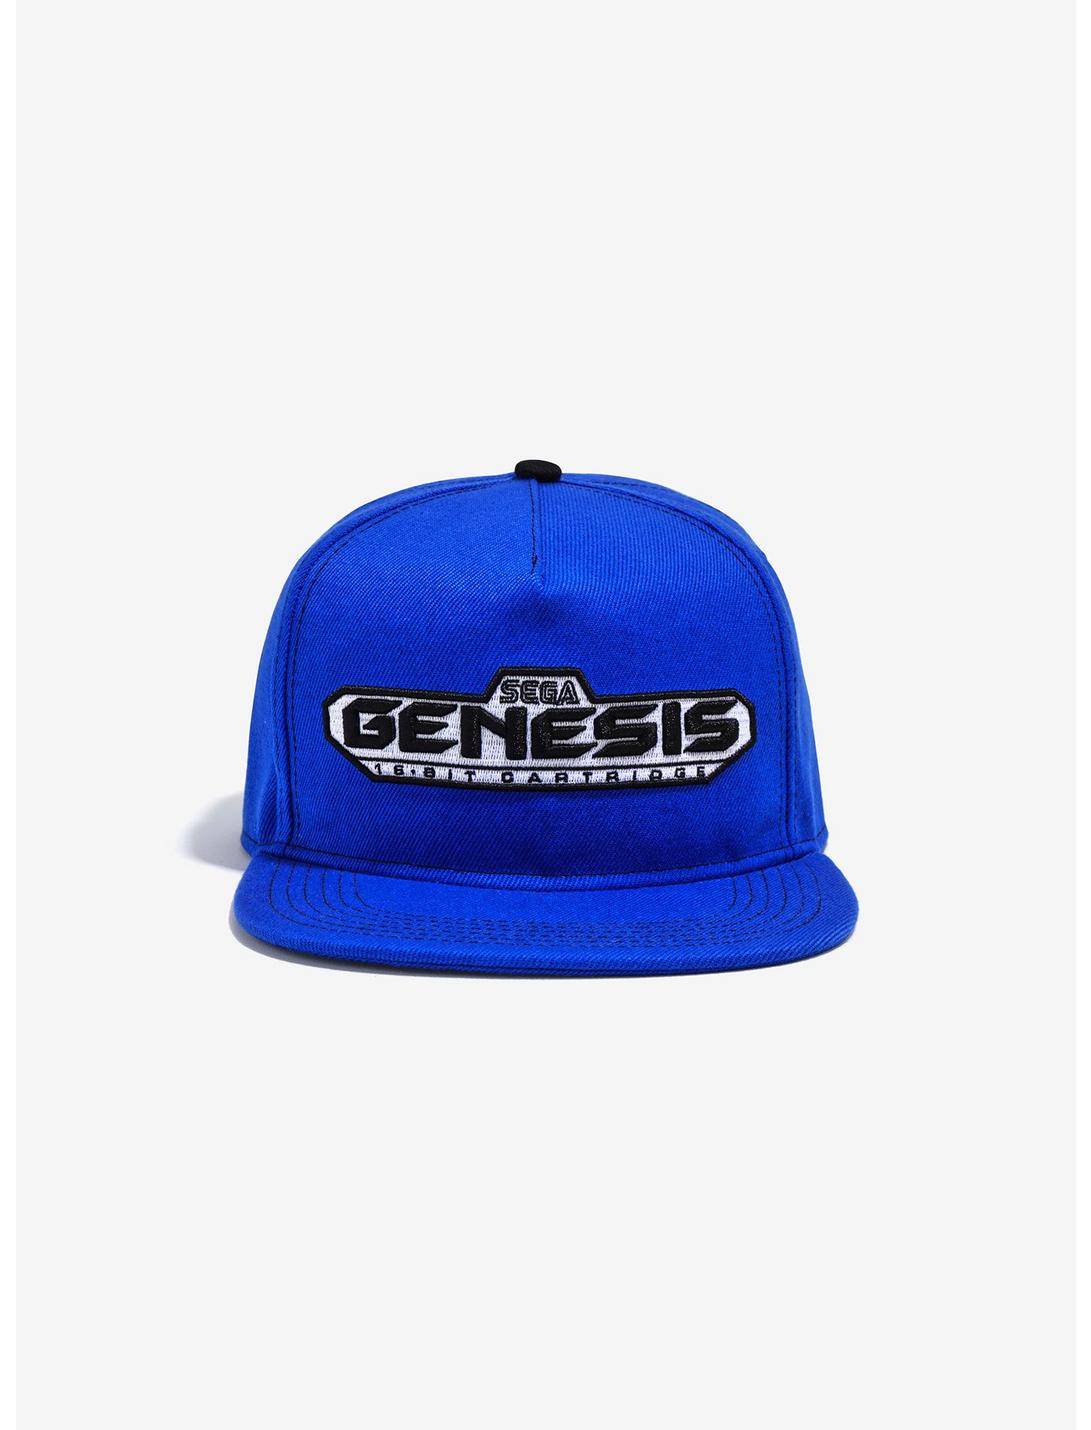 Sega Genesis Patch Snapback Hat, , hi-res